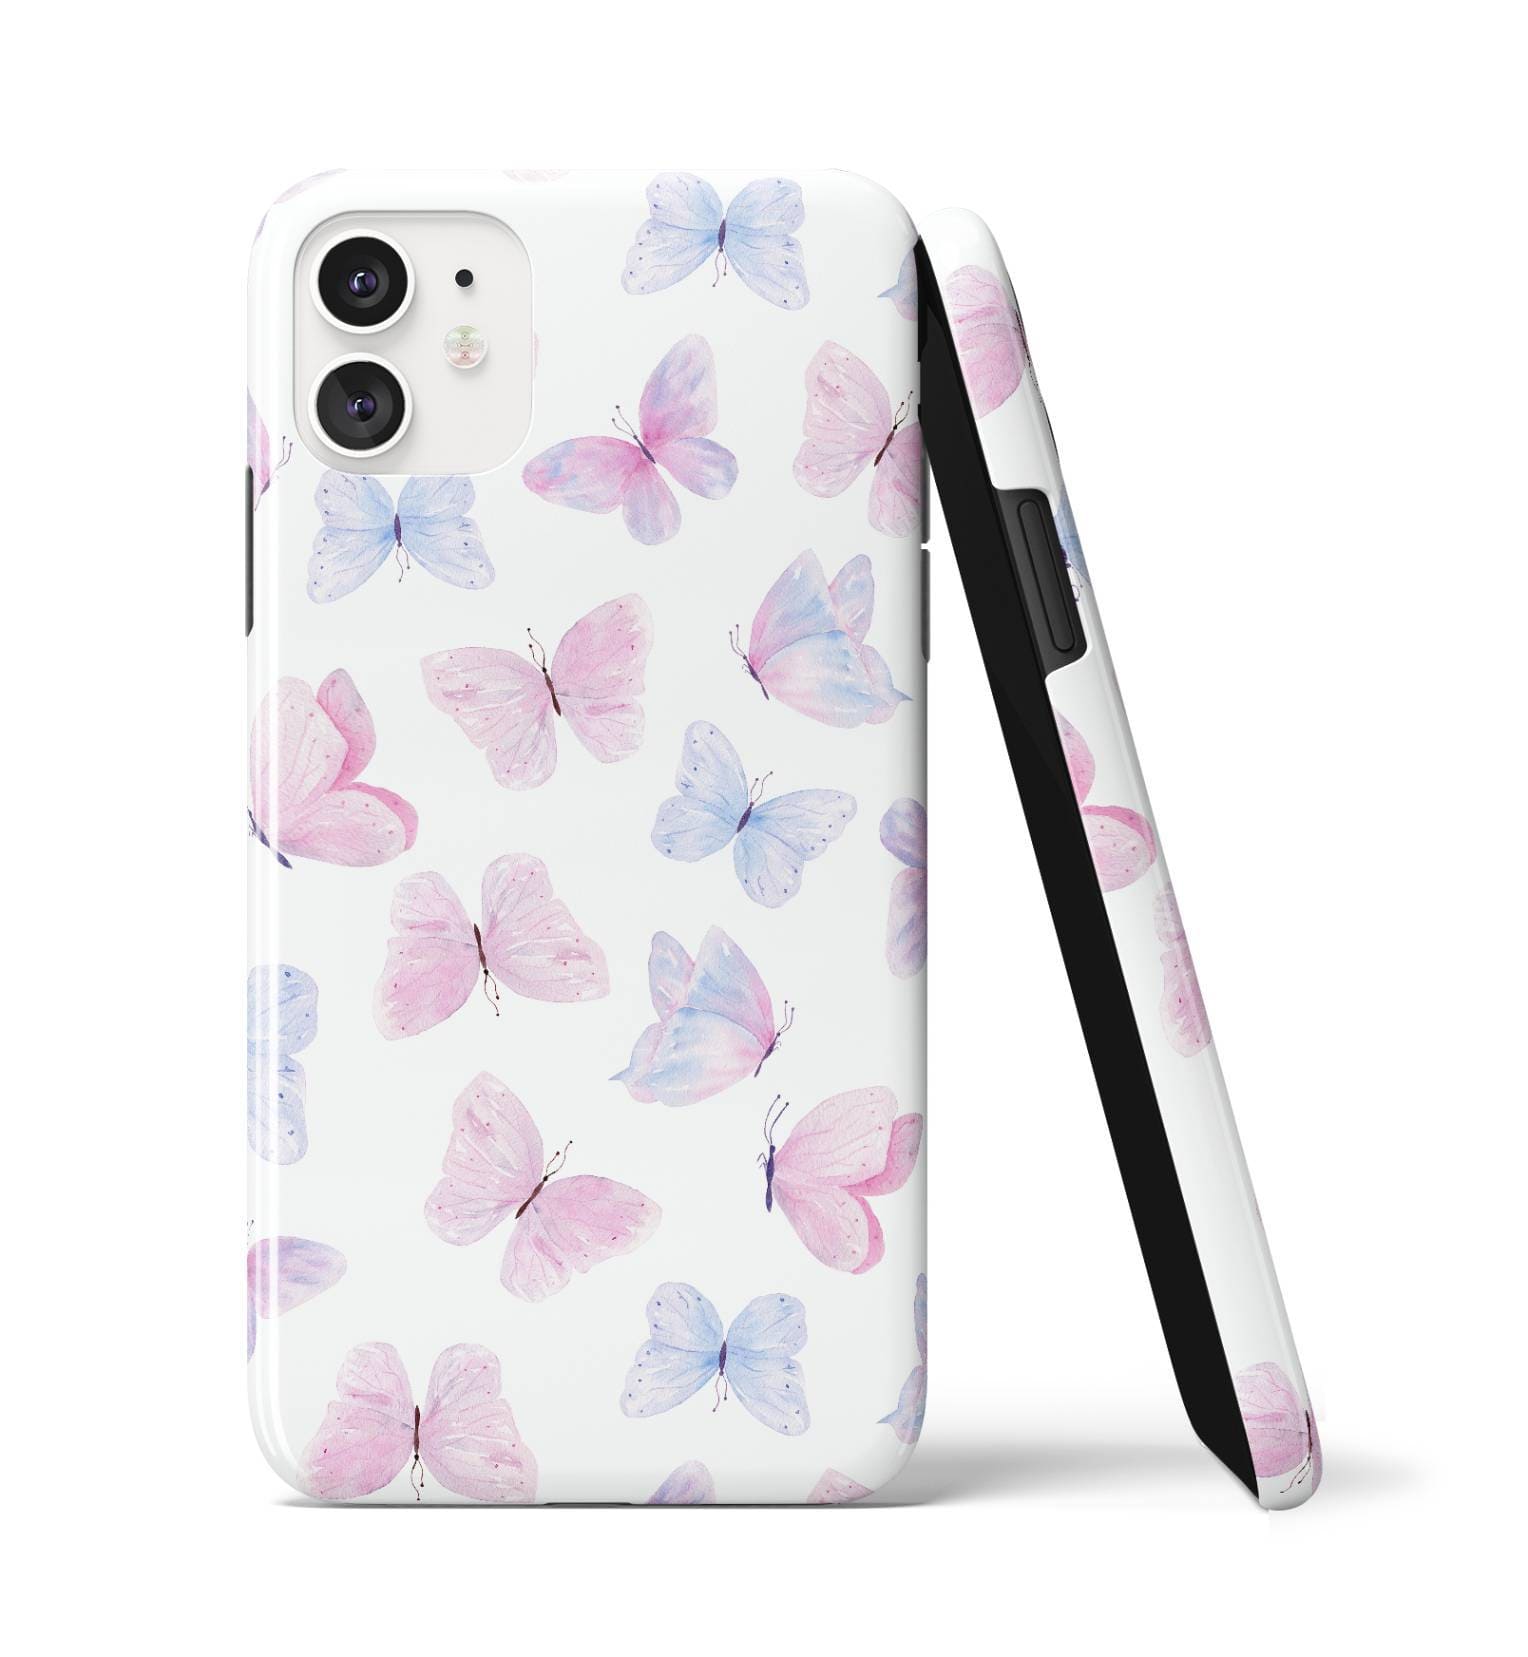 Cute Butterflies - iPhone Case